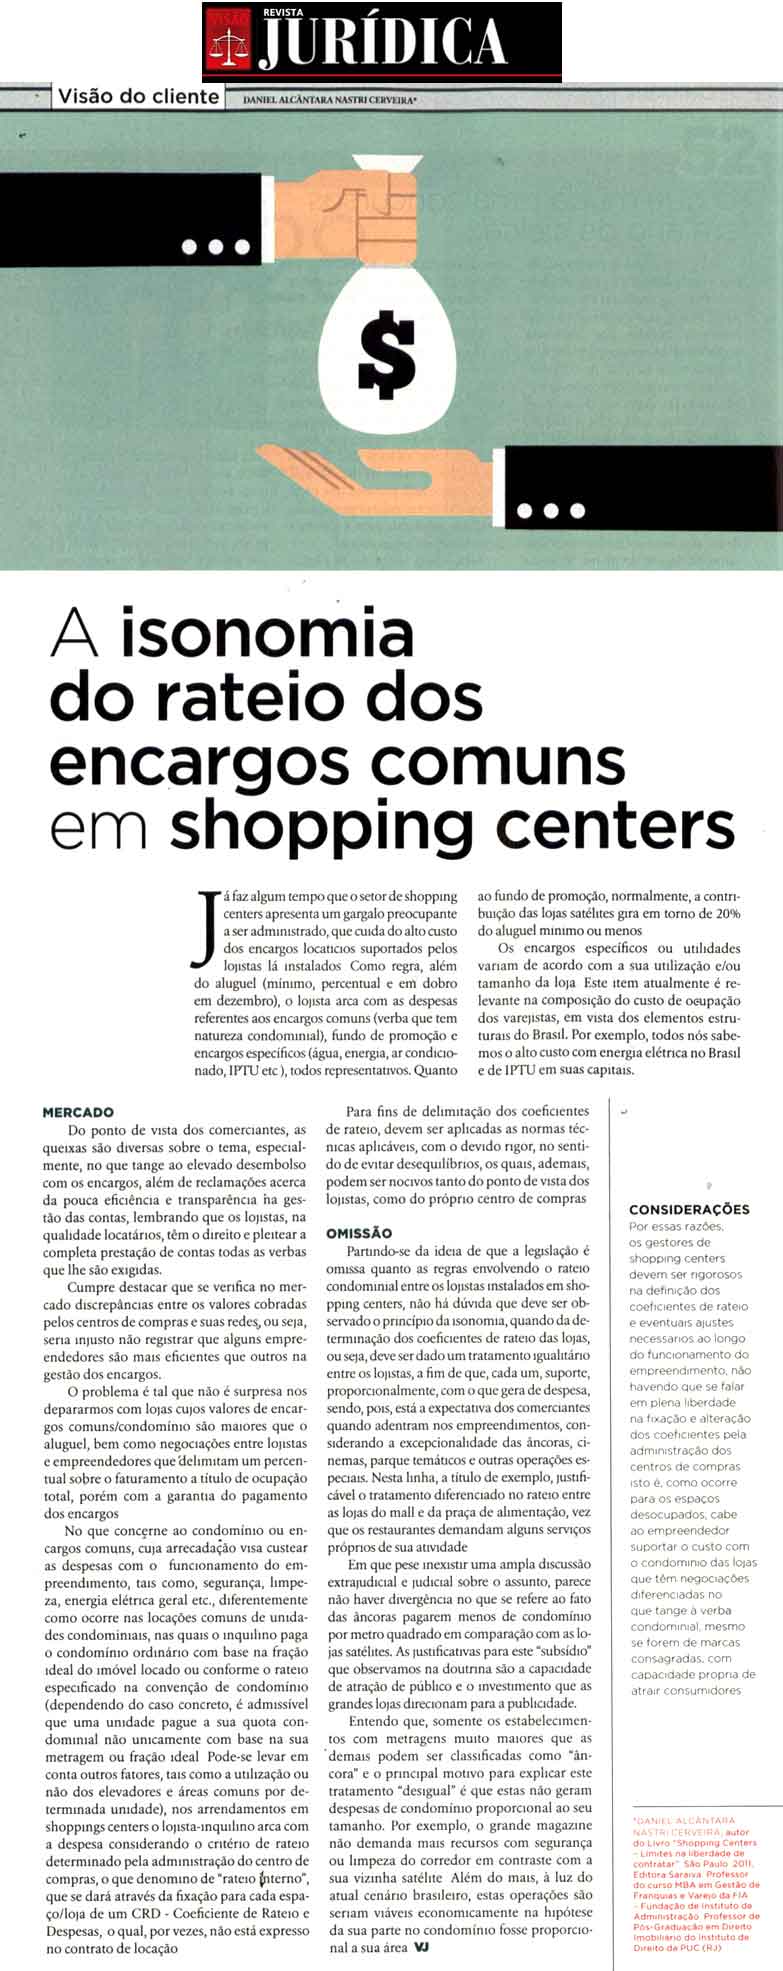 A isonomia do rateio dos encargos comuns em shopping centers